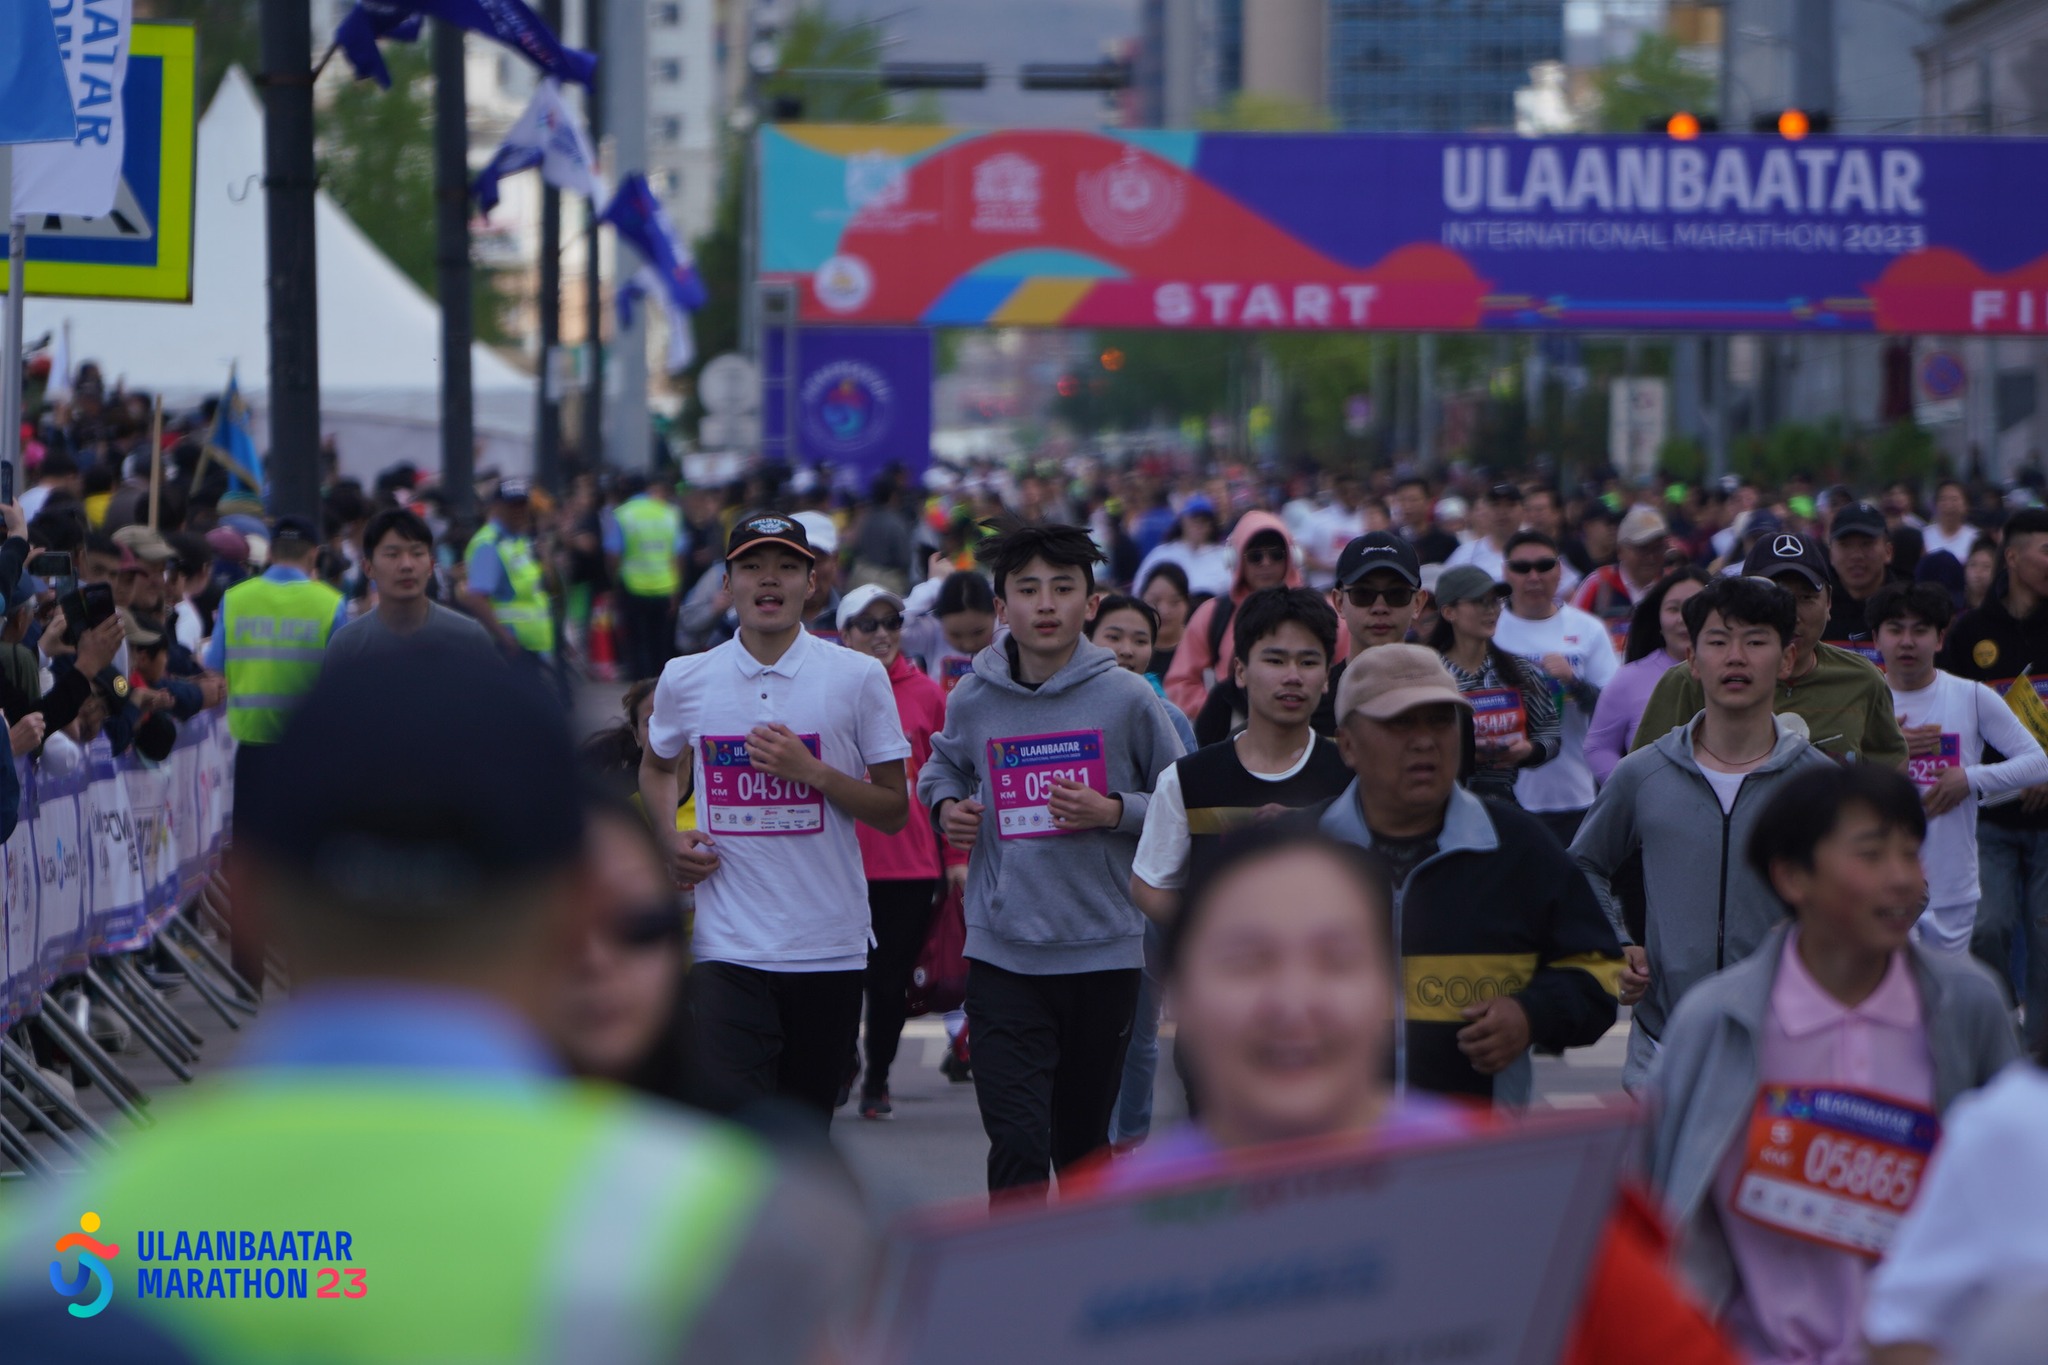 "Улаанбаатар марафон” олон улсын гүйлтэд 5км-ийн зайд бүртгүүлэгчдийн тоо өсөж байна